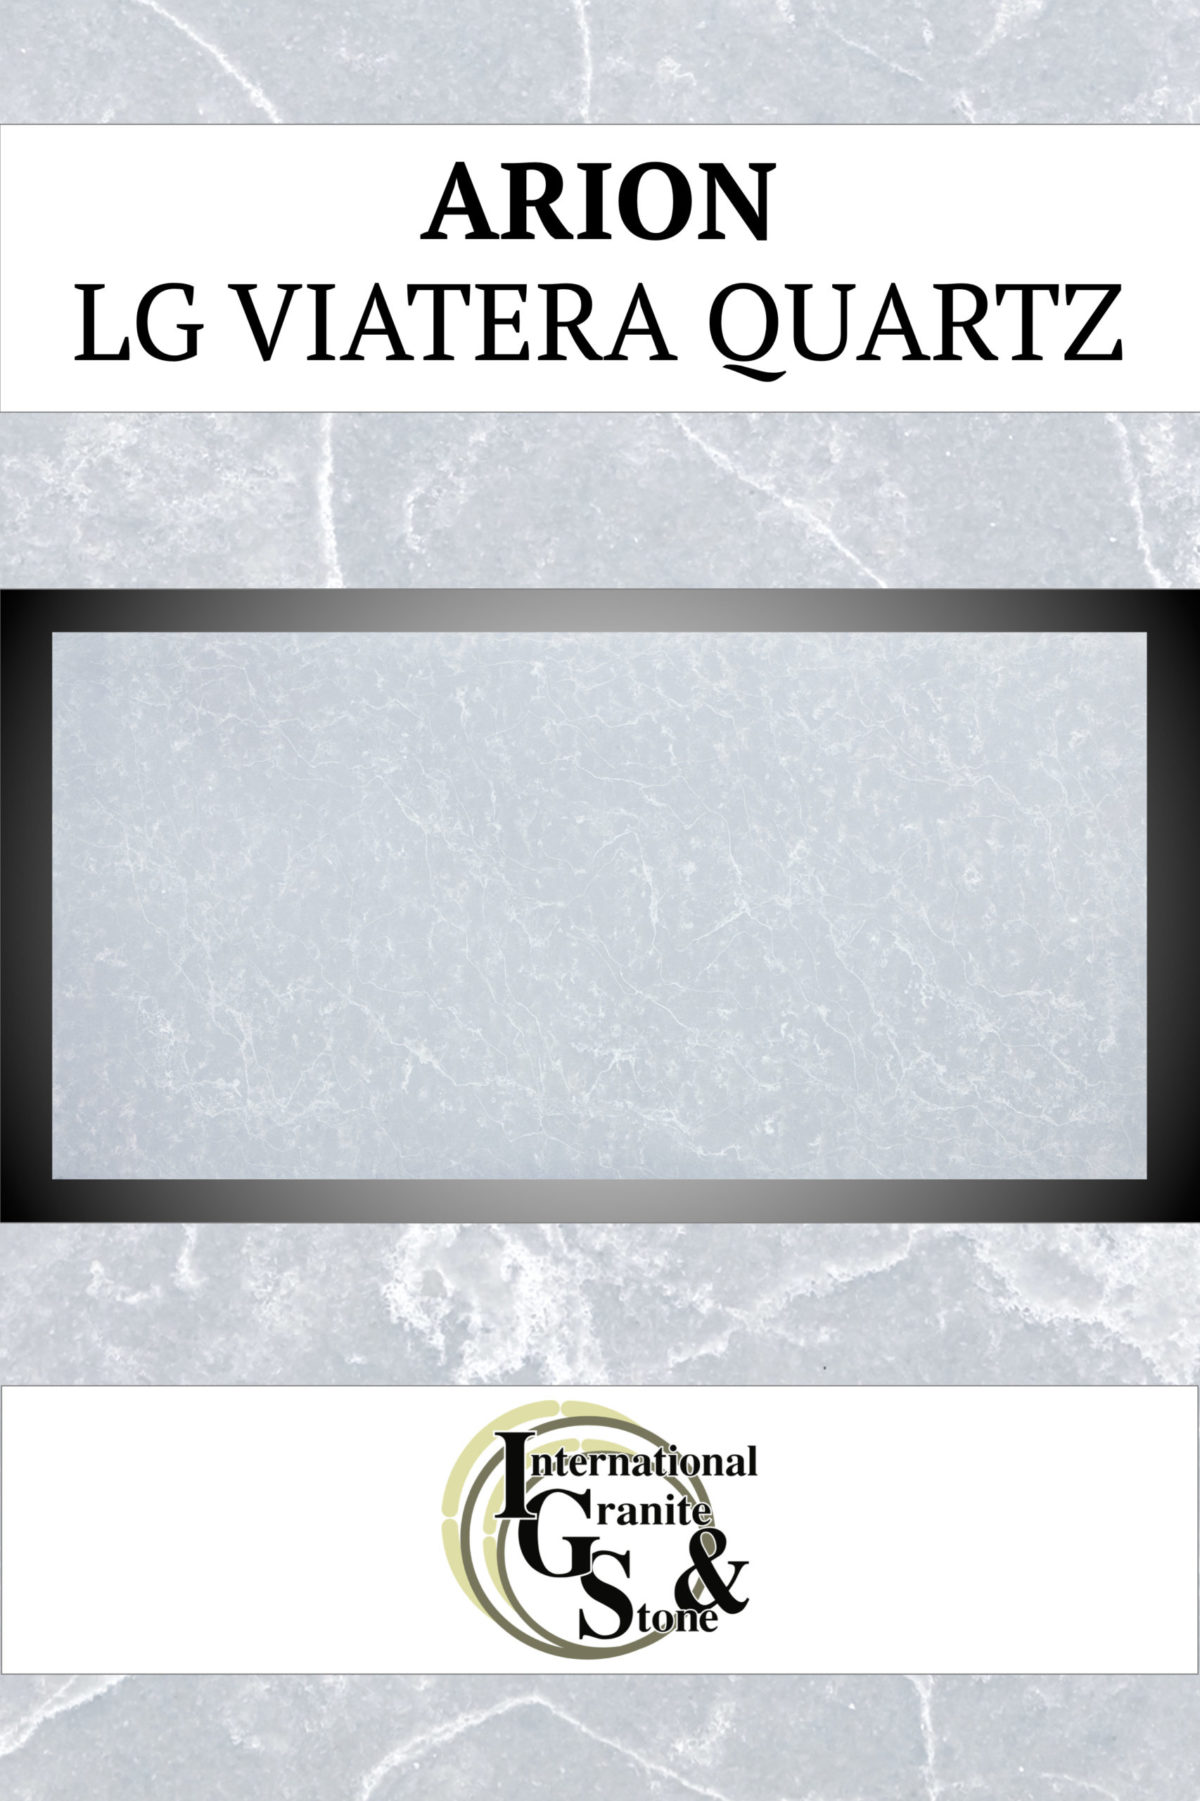 Arion LG Viatera Quartz Countertops